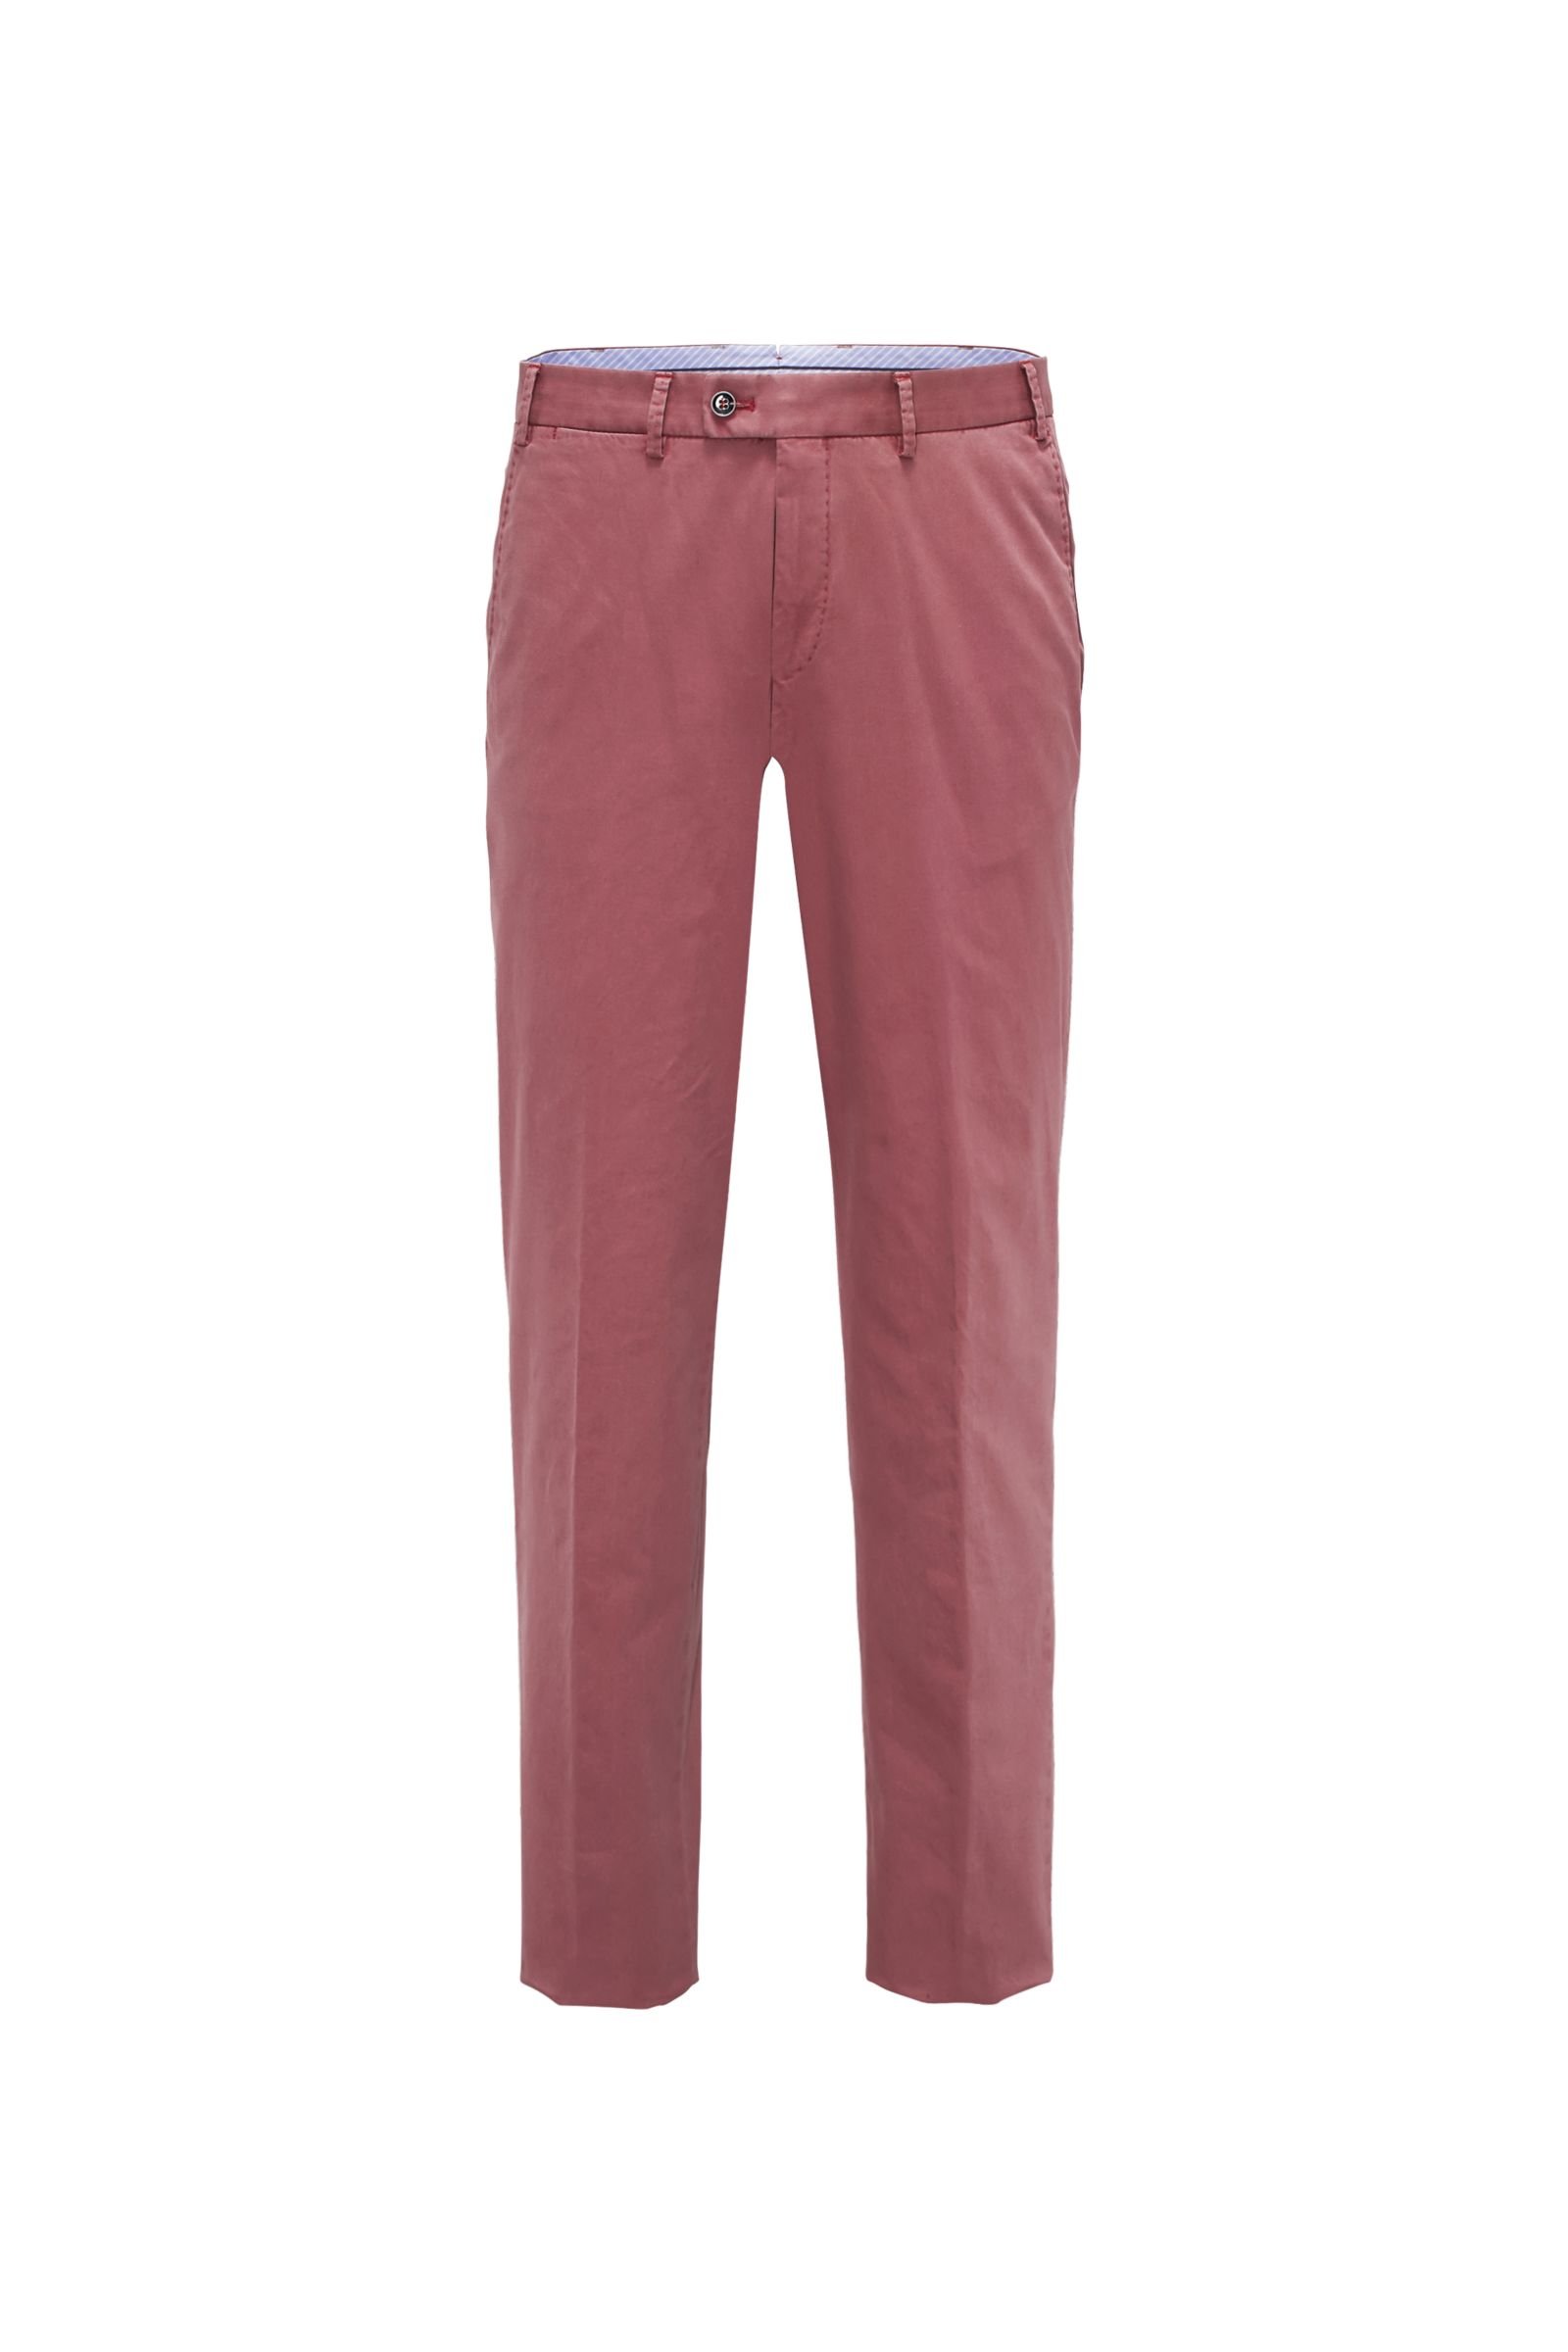 Cotton trousers 'Parma' antique pink